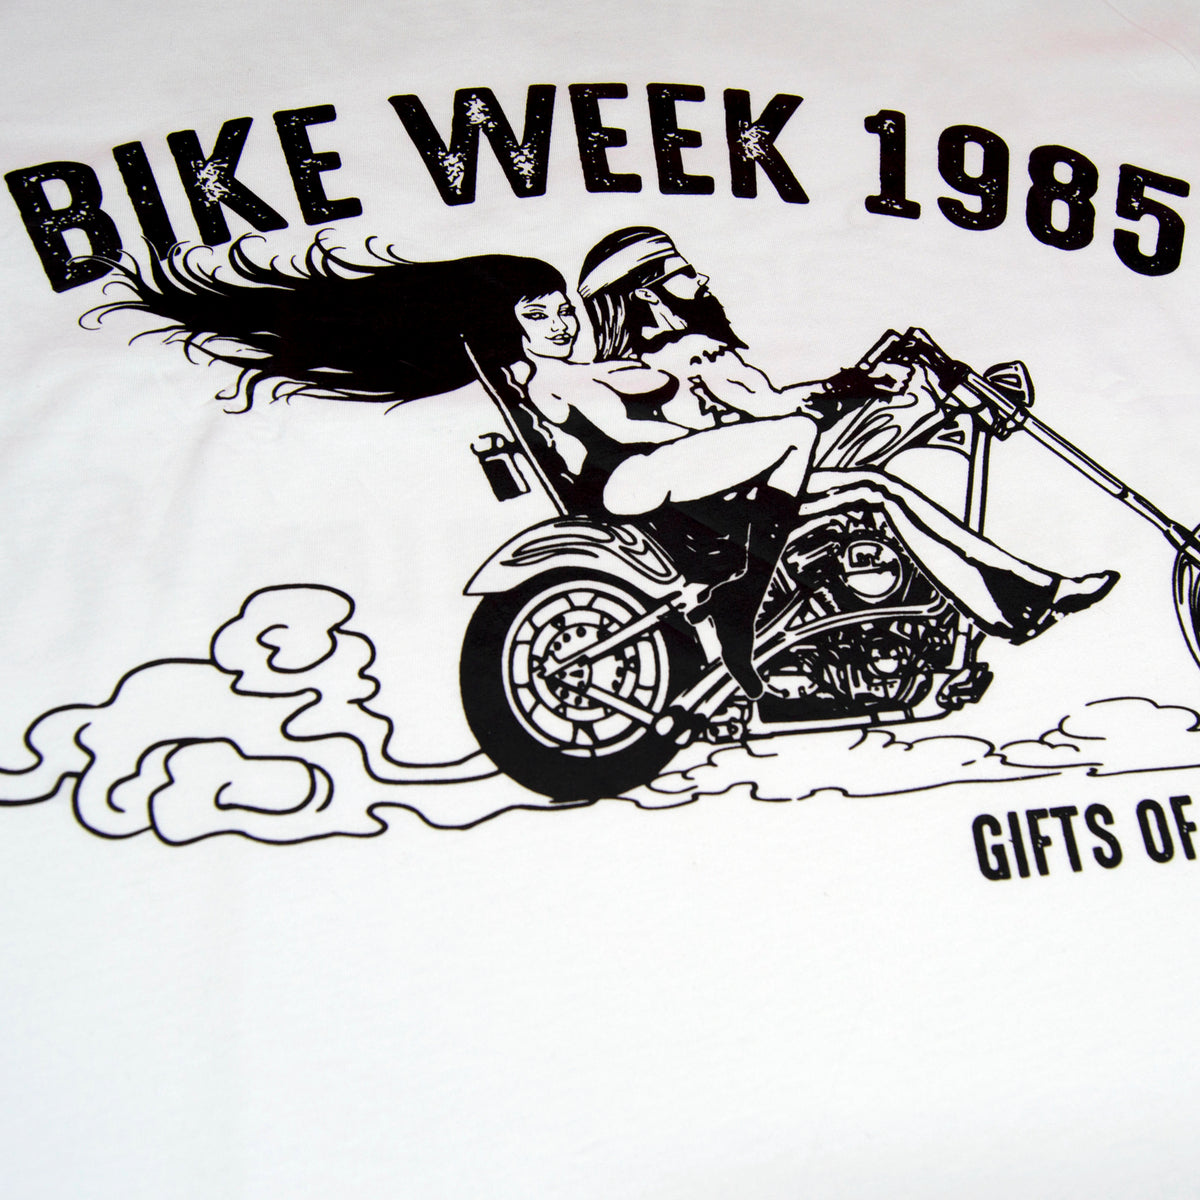 Bike Week T-shirt | White